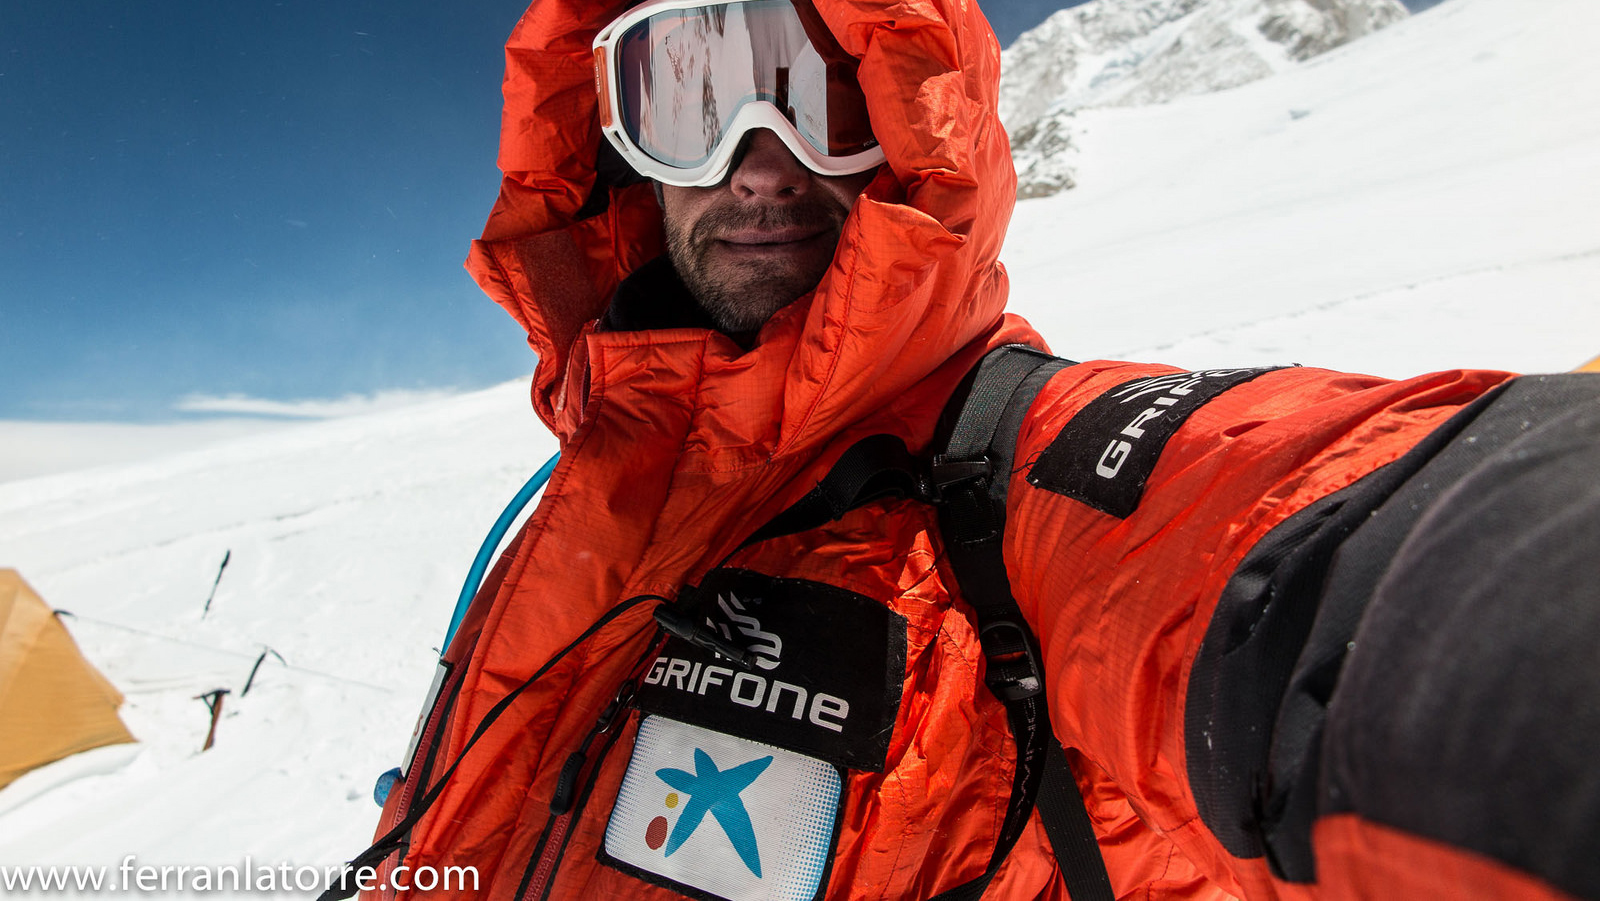 Només l’Everest s’interposa entre Ferran Latorre i el repte de la seva vida